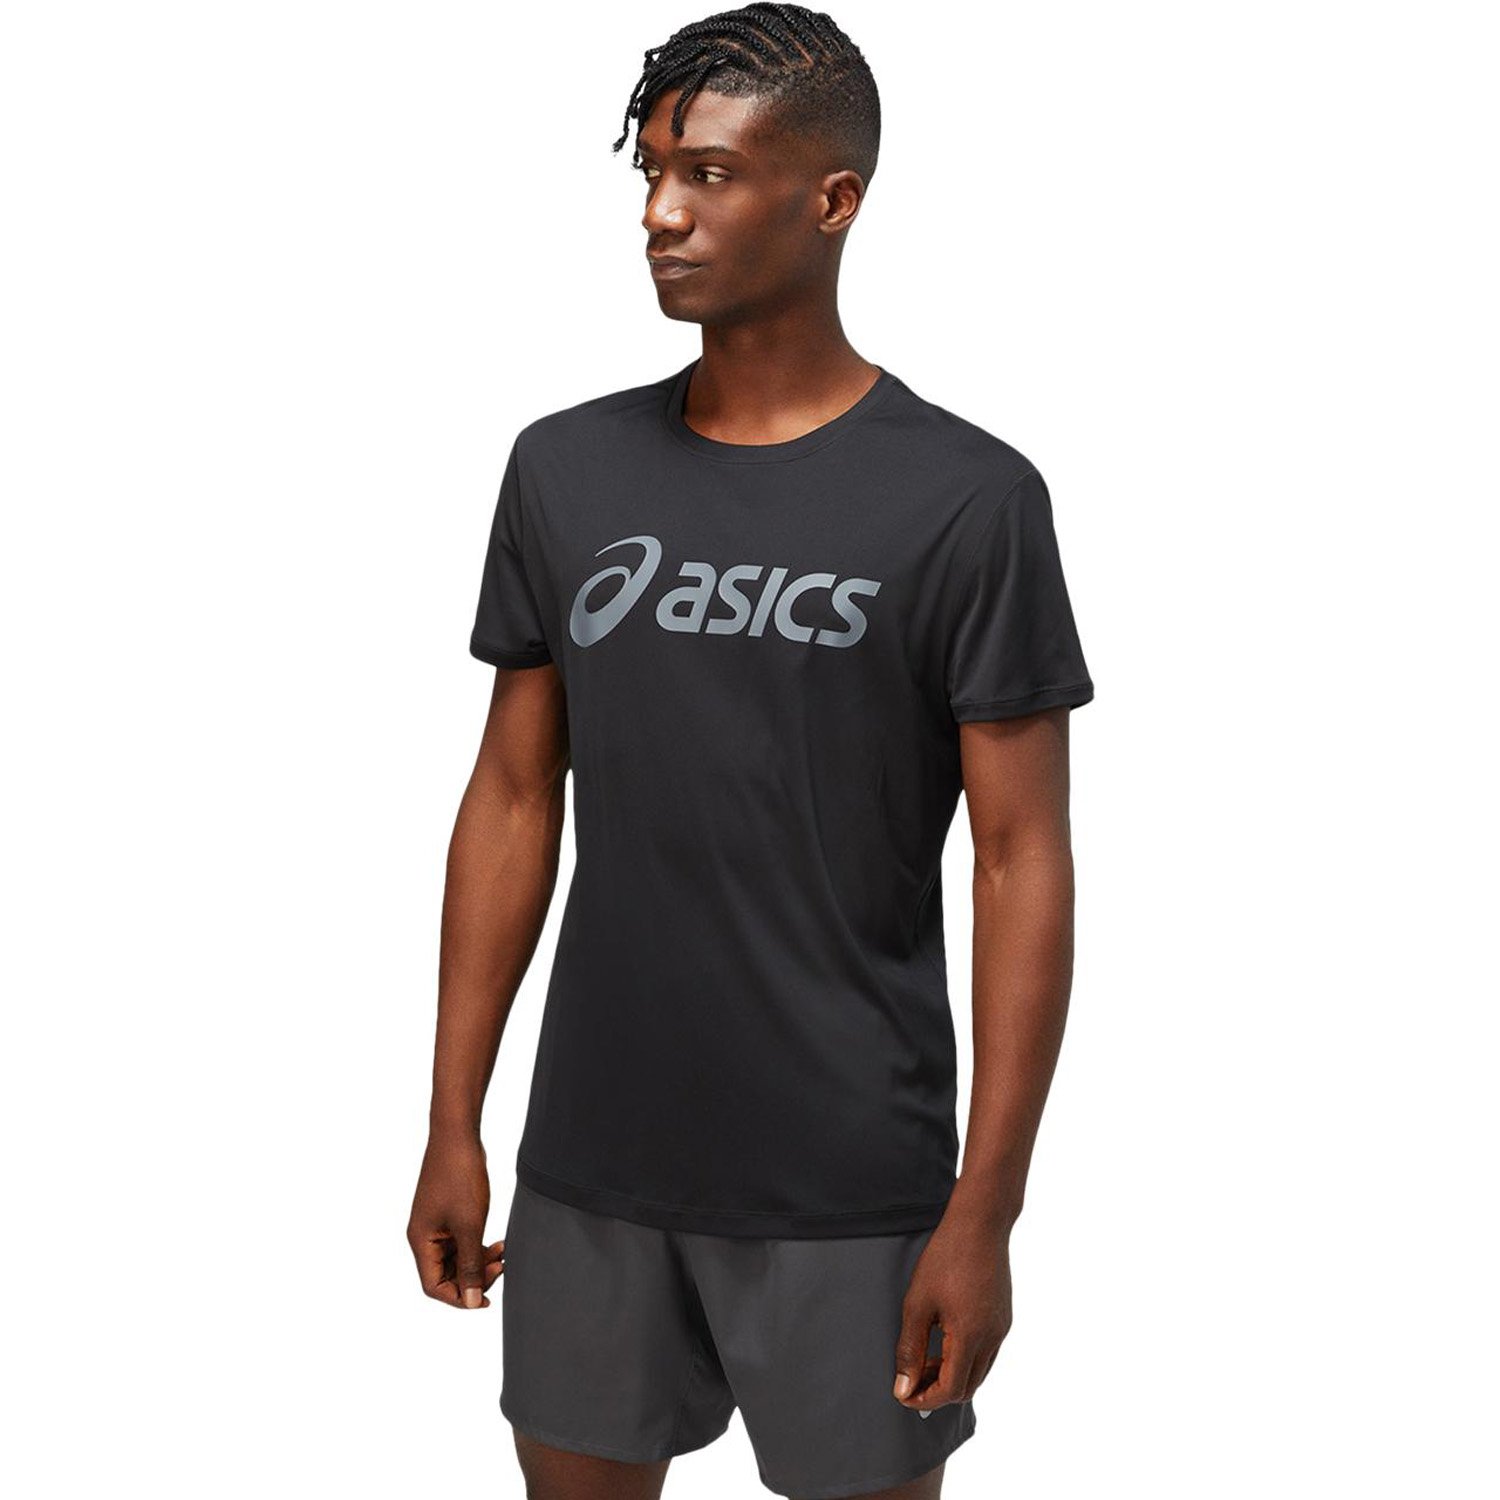 Asics Core Asics Erkek Tişört - SİYAH - 1